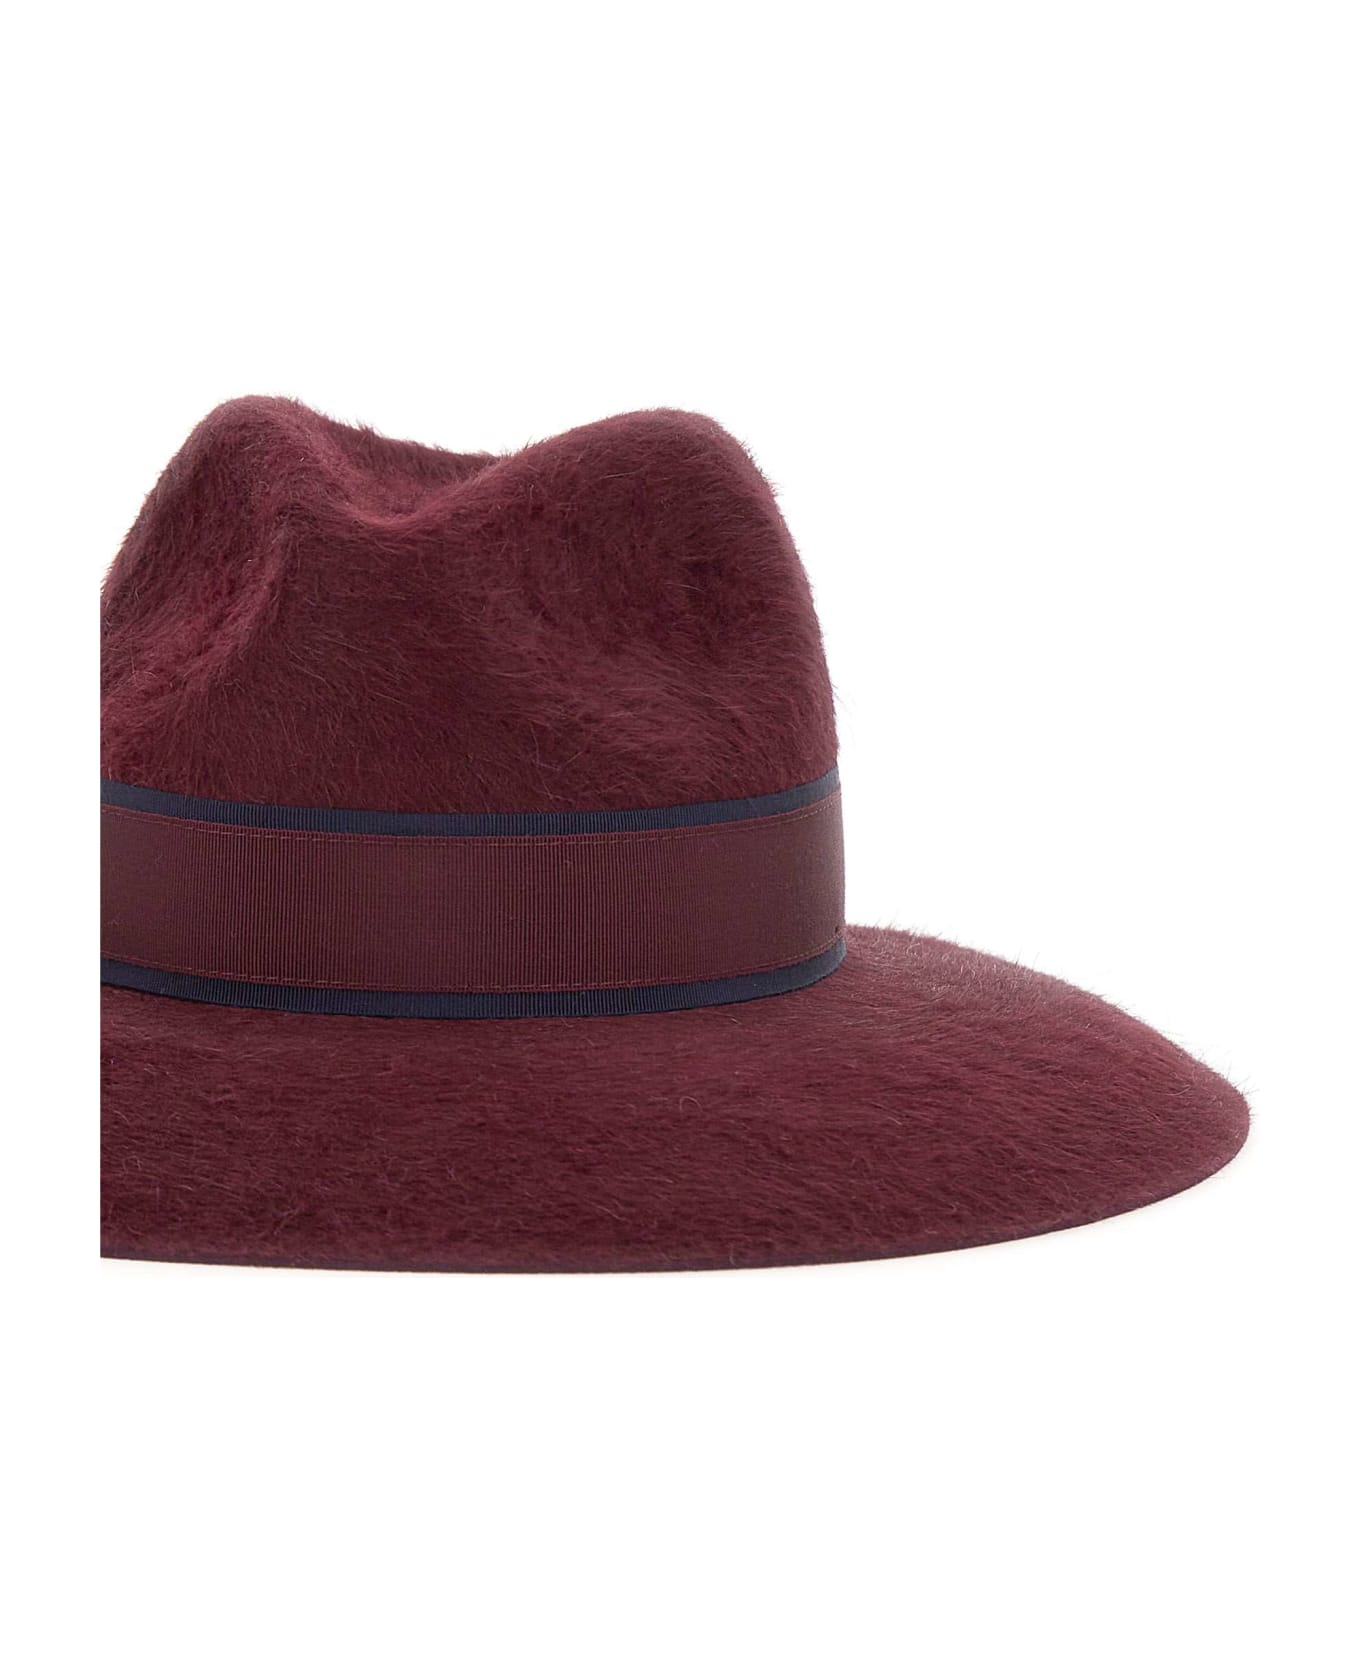 Borsalino Felt Hat - BORDEAUX 帽子